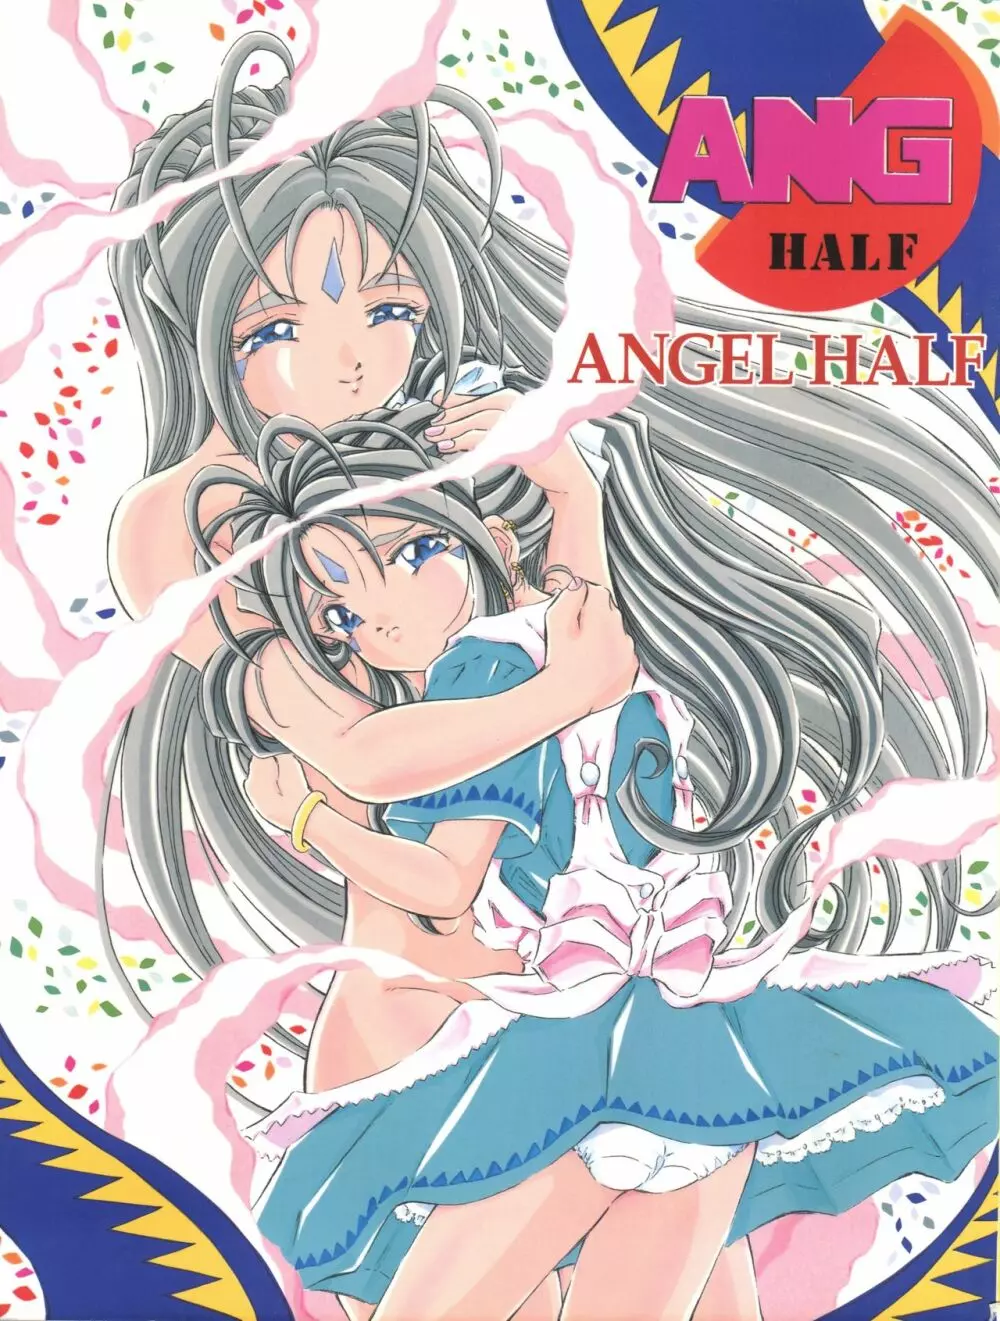 ANG HALF ANGEL HALF - page1